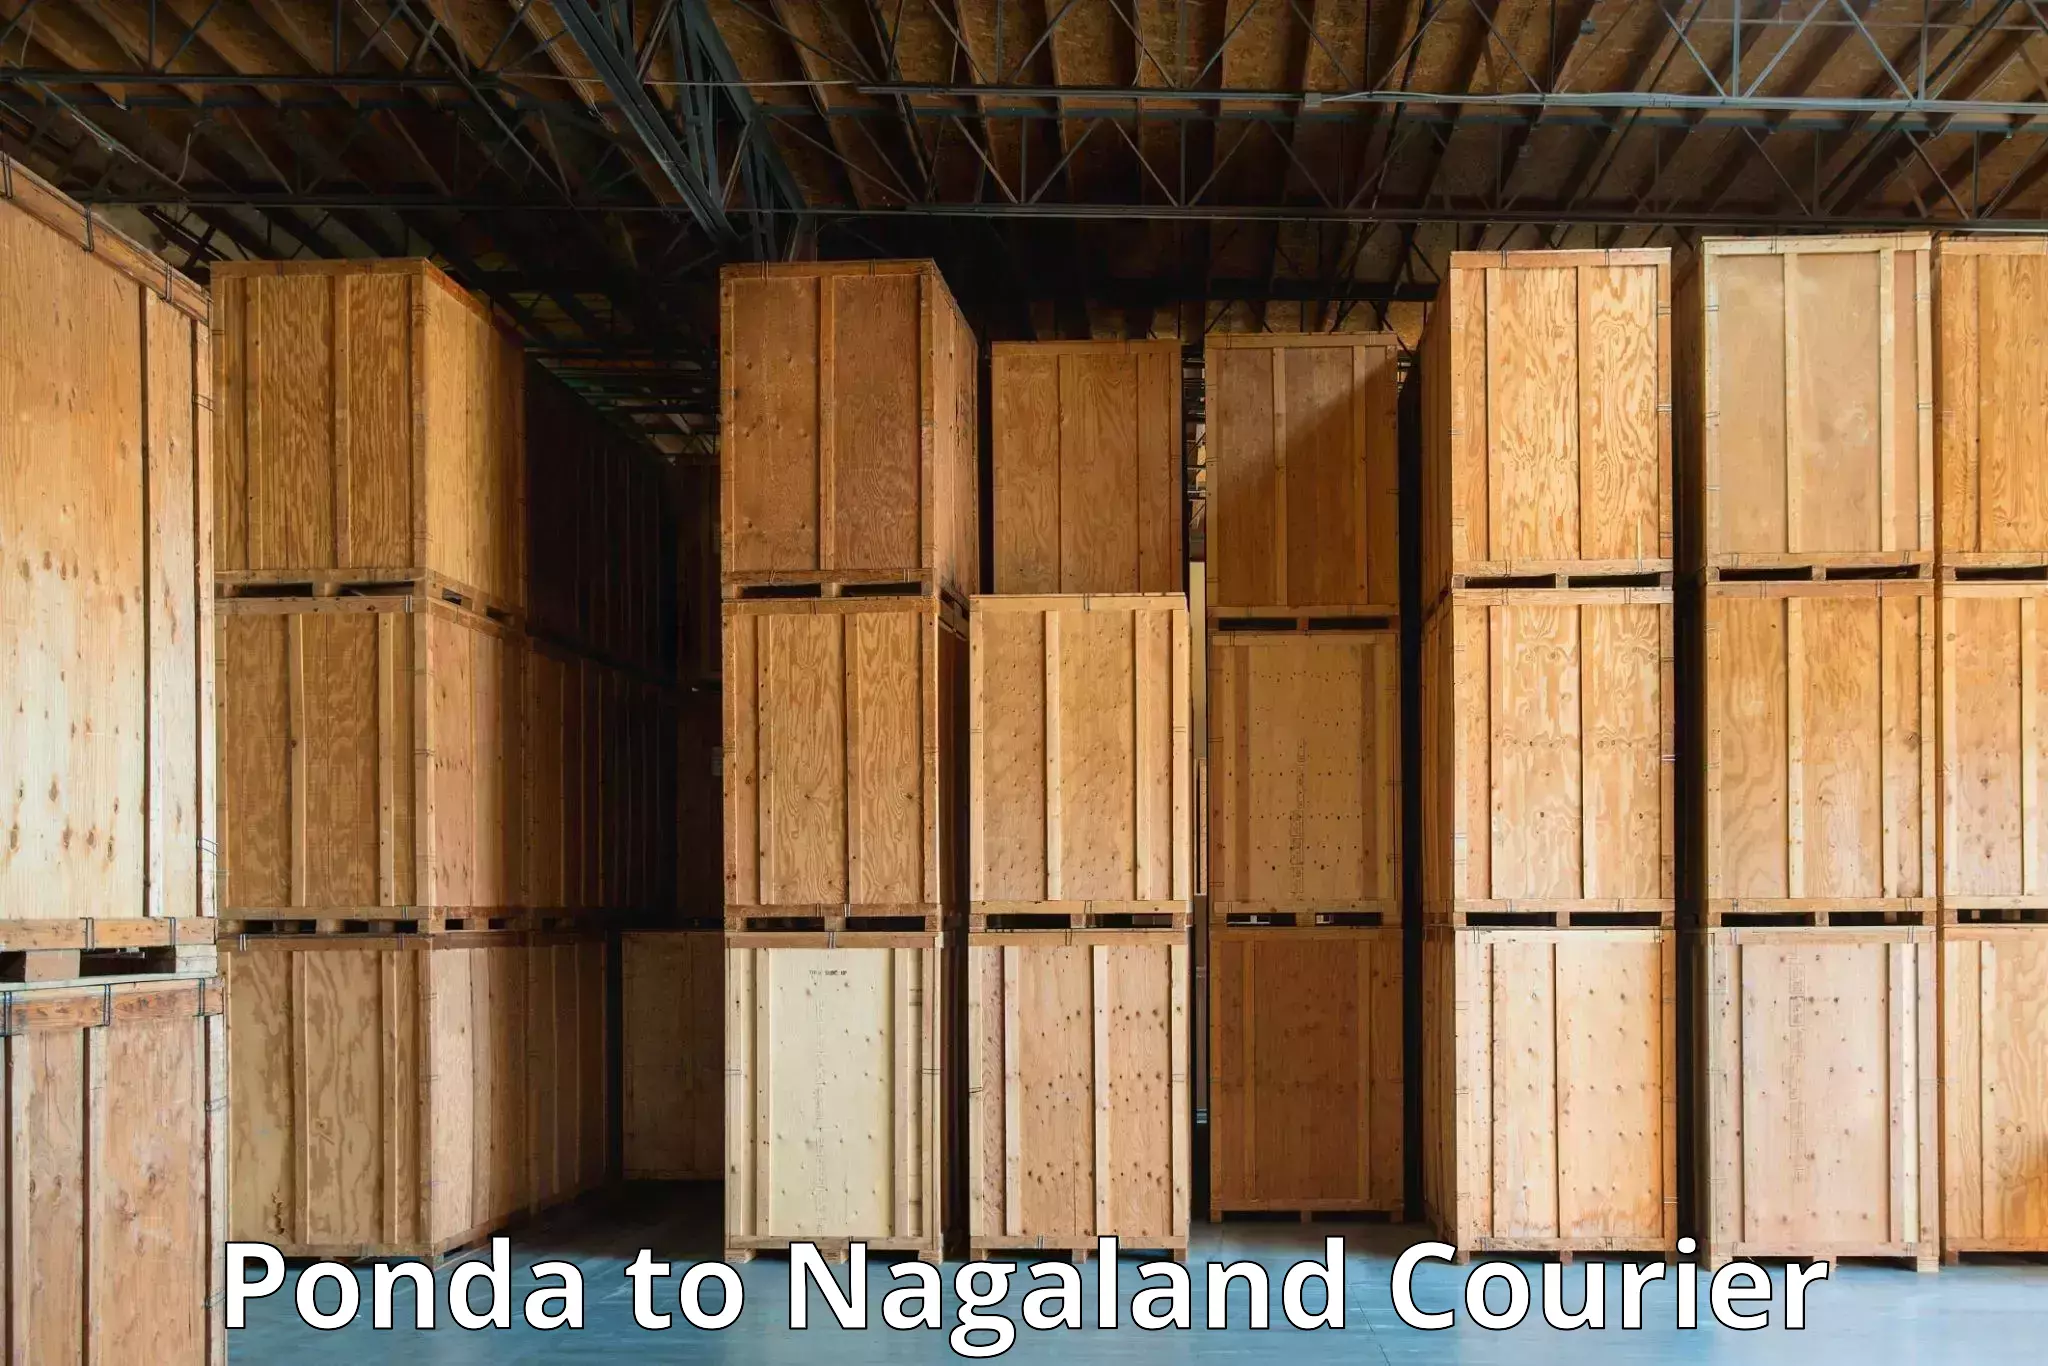 Global shipping solutions Ponda to NIT Nagaland